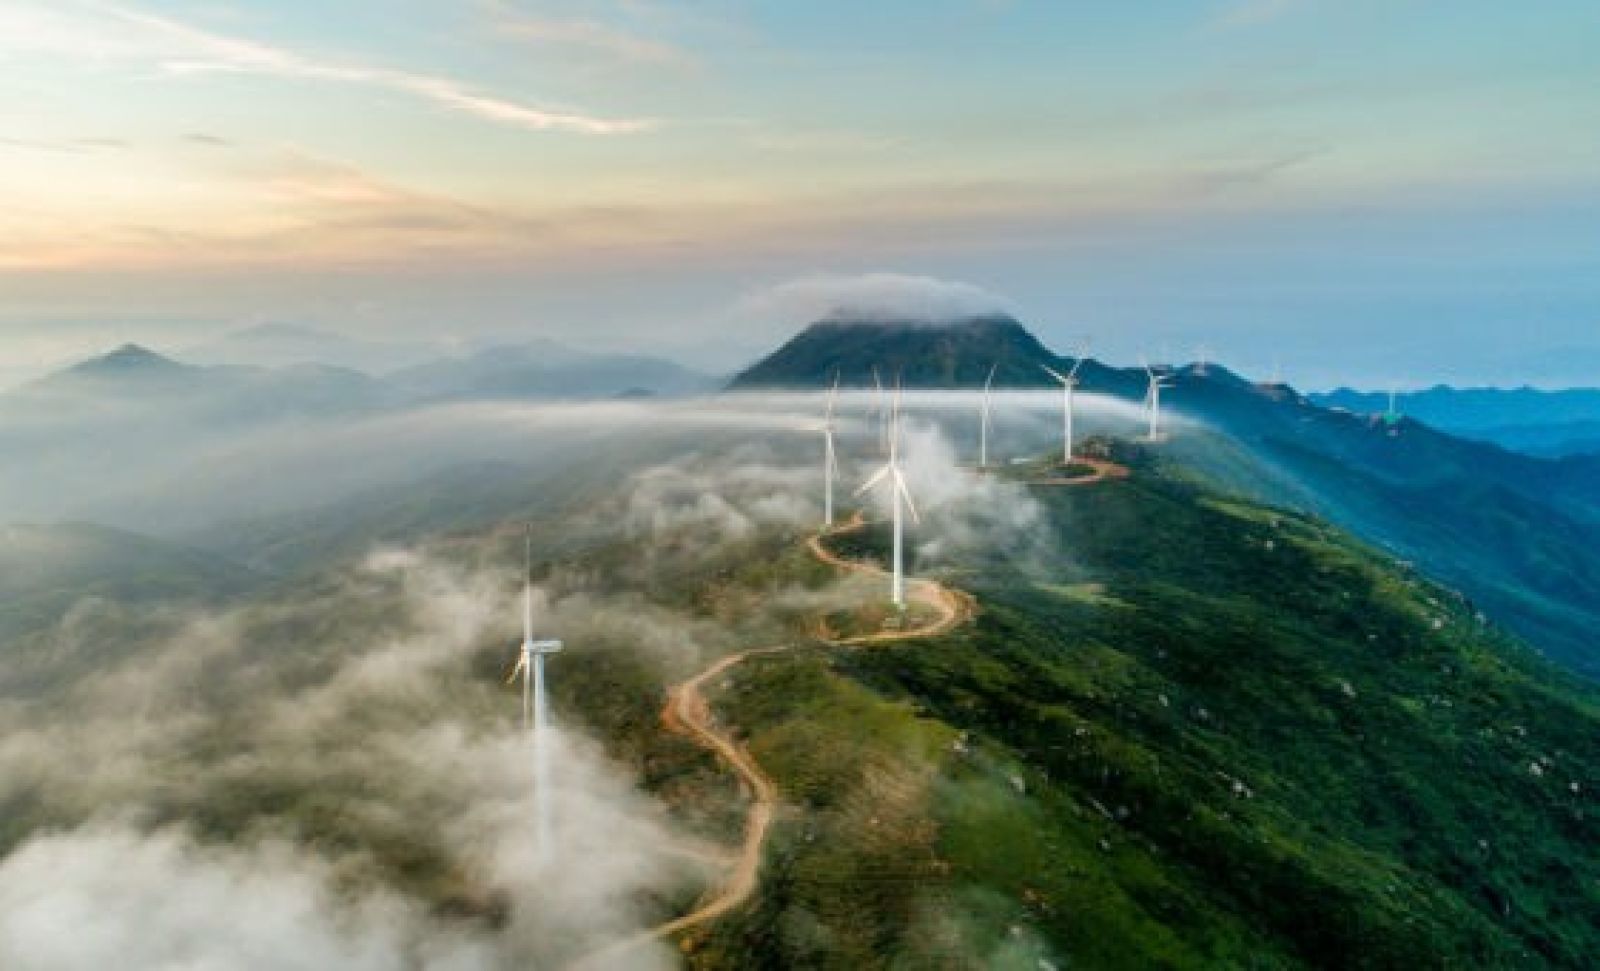 Cloudy hills wind turbines